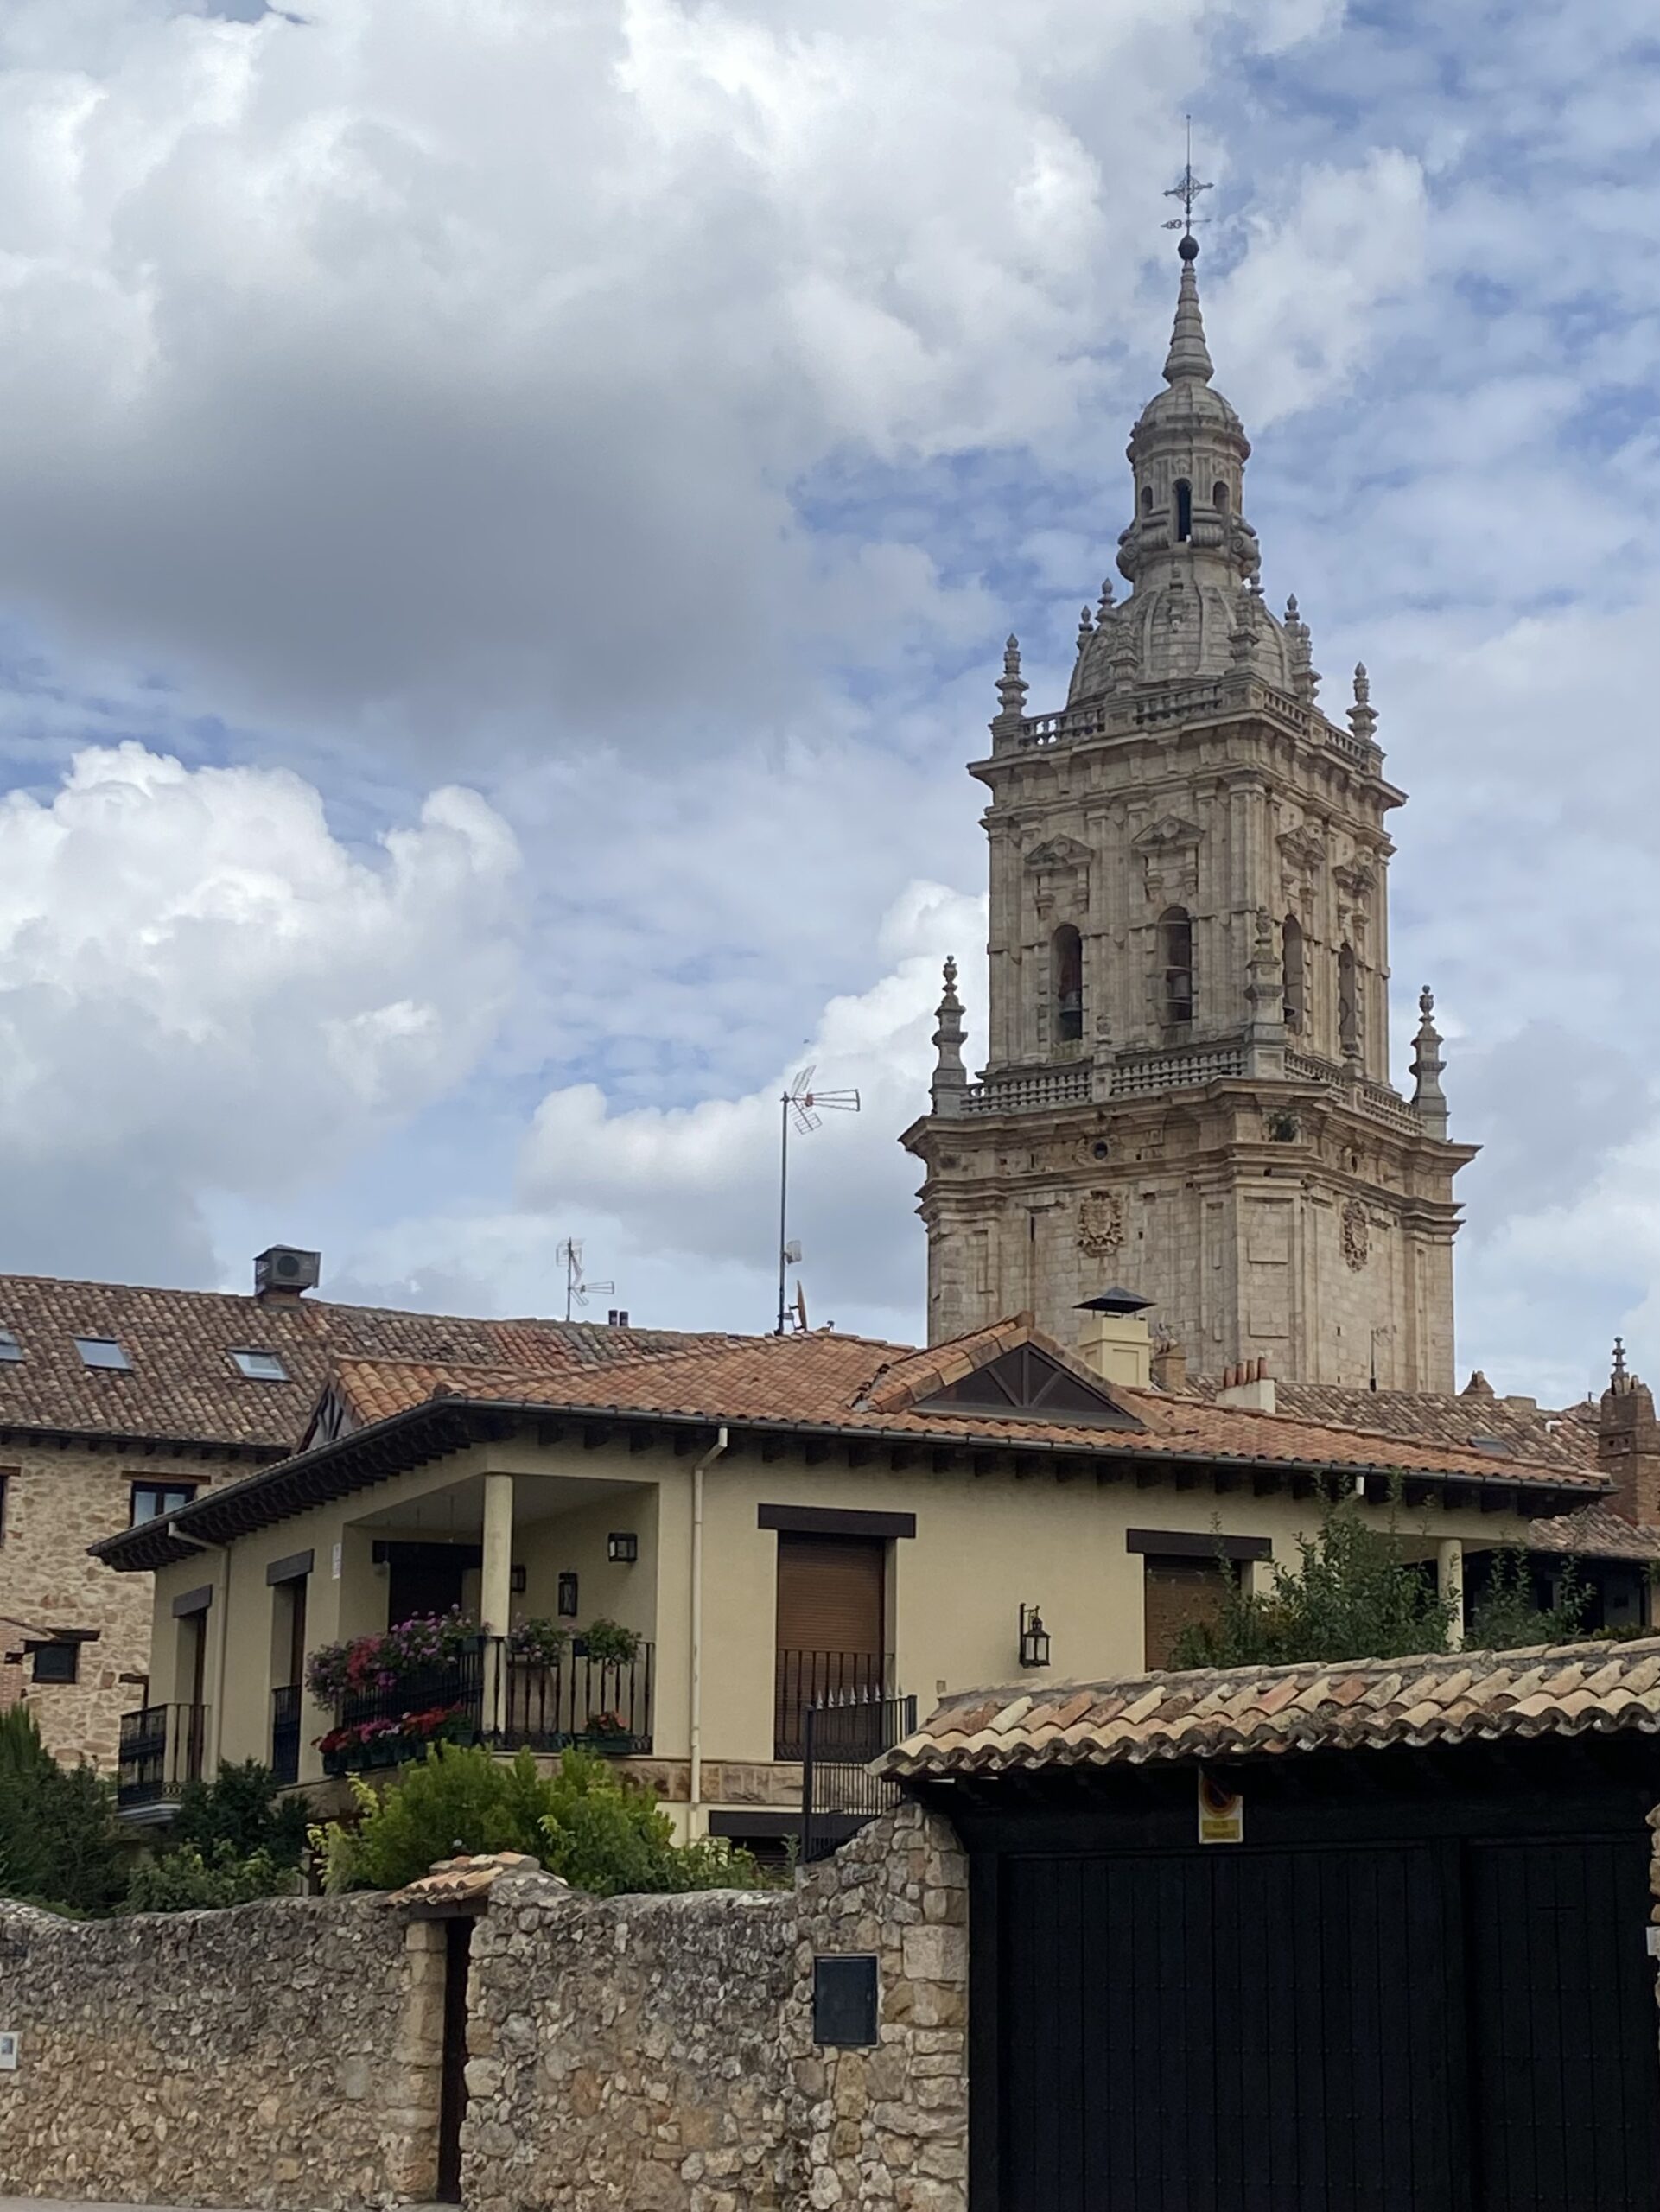 The cathedral of El Burgo de Osma